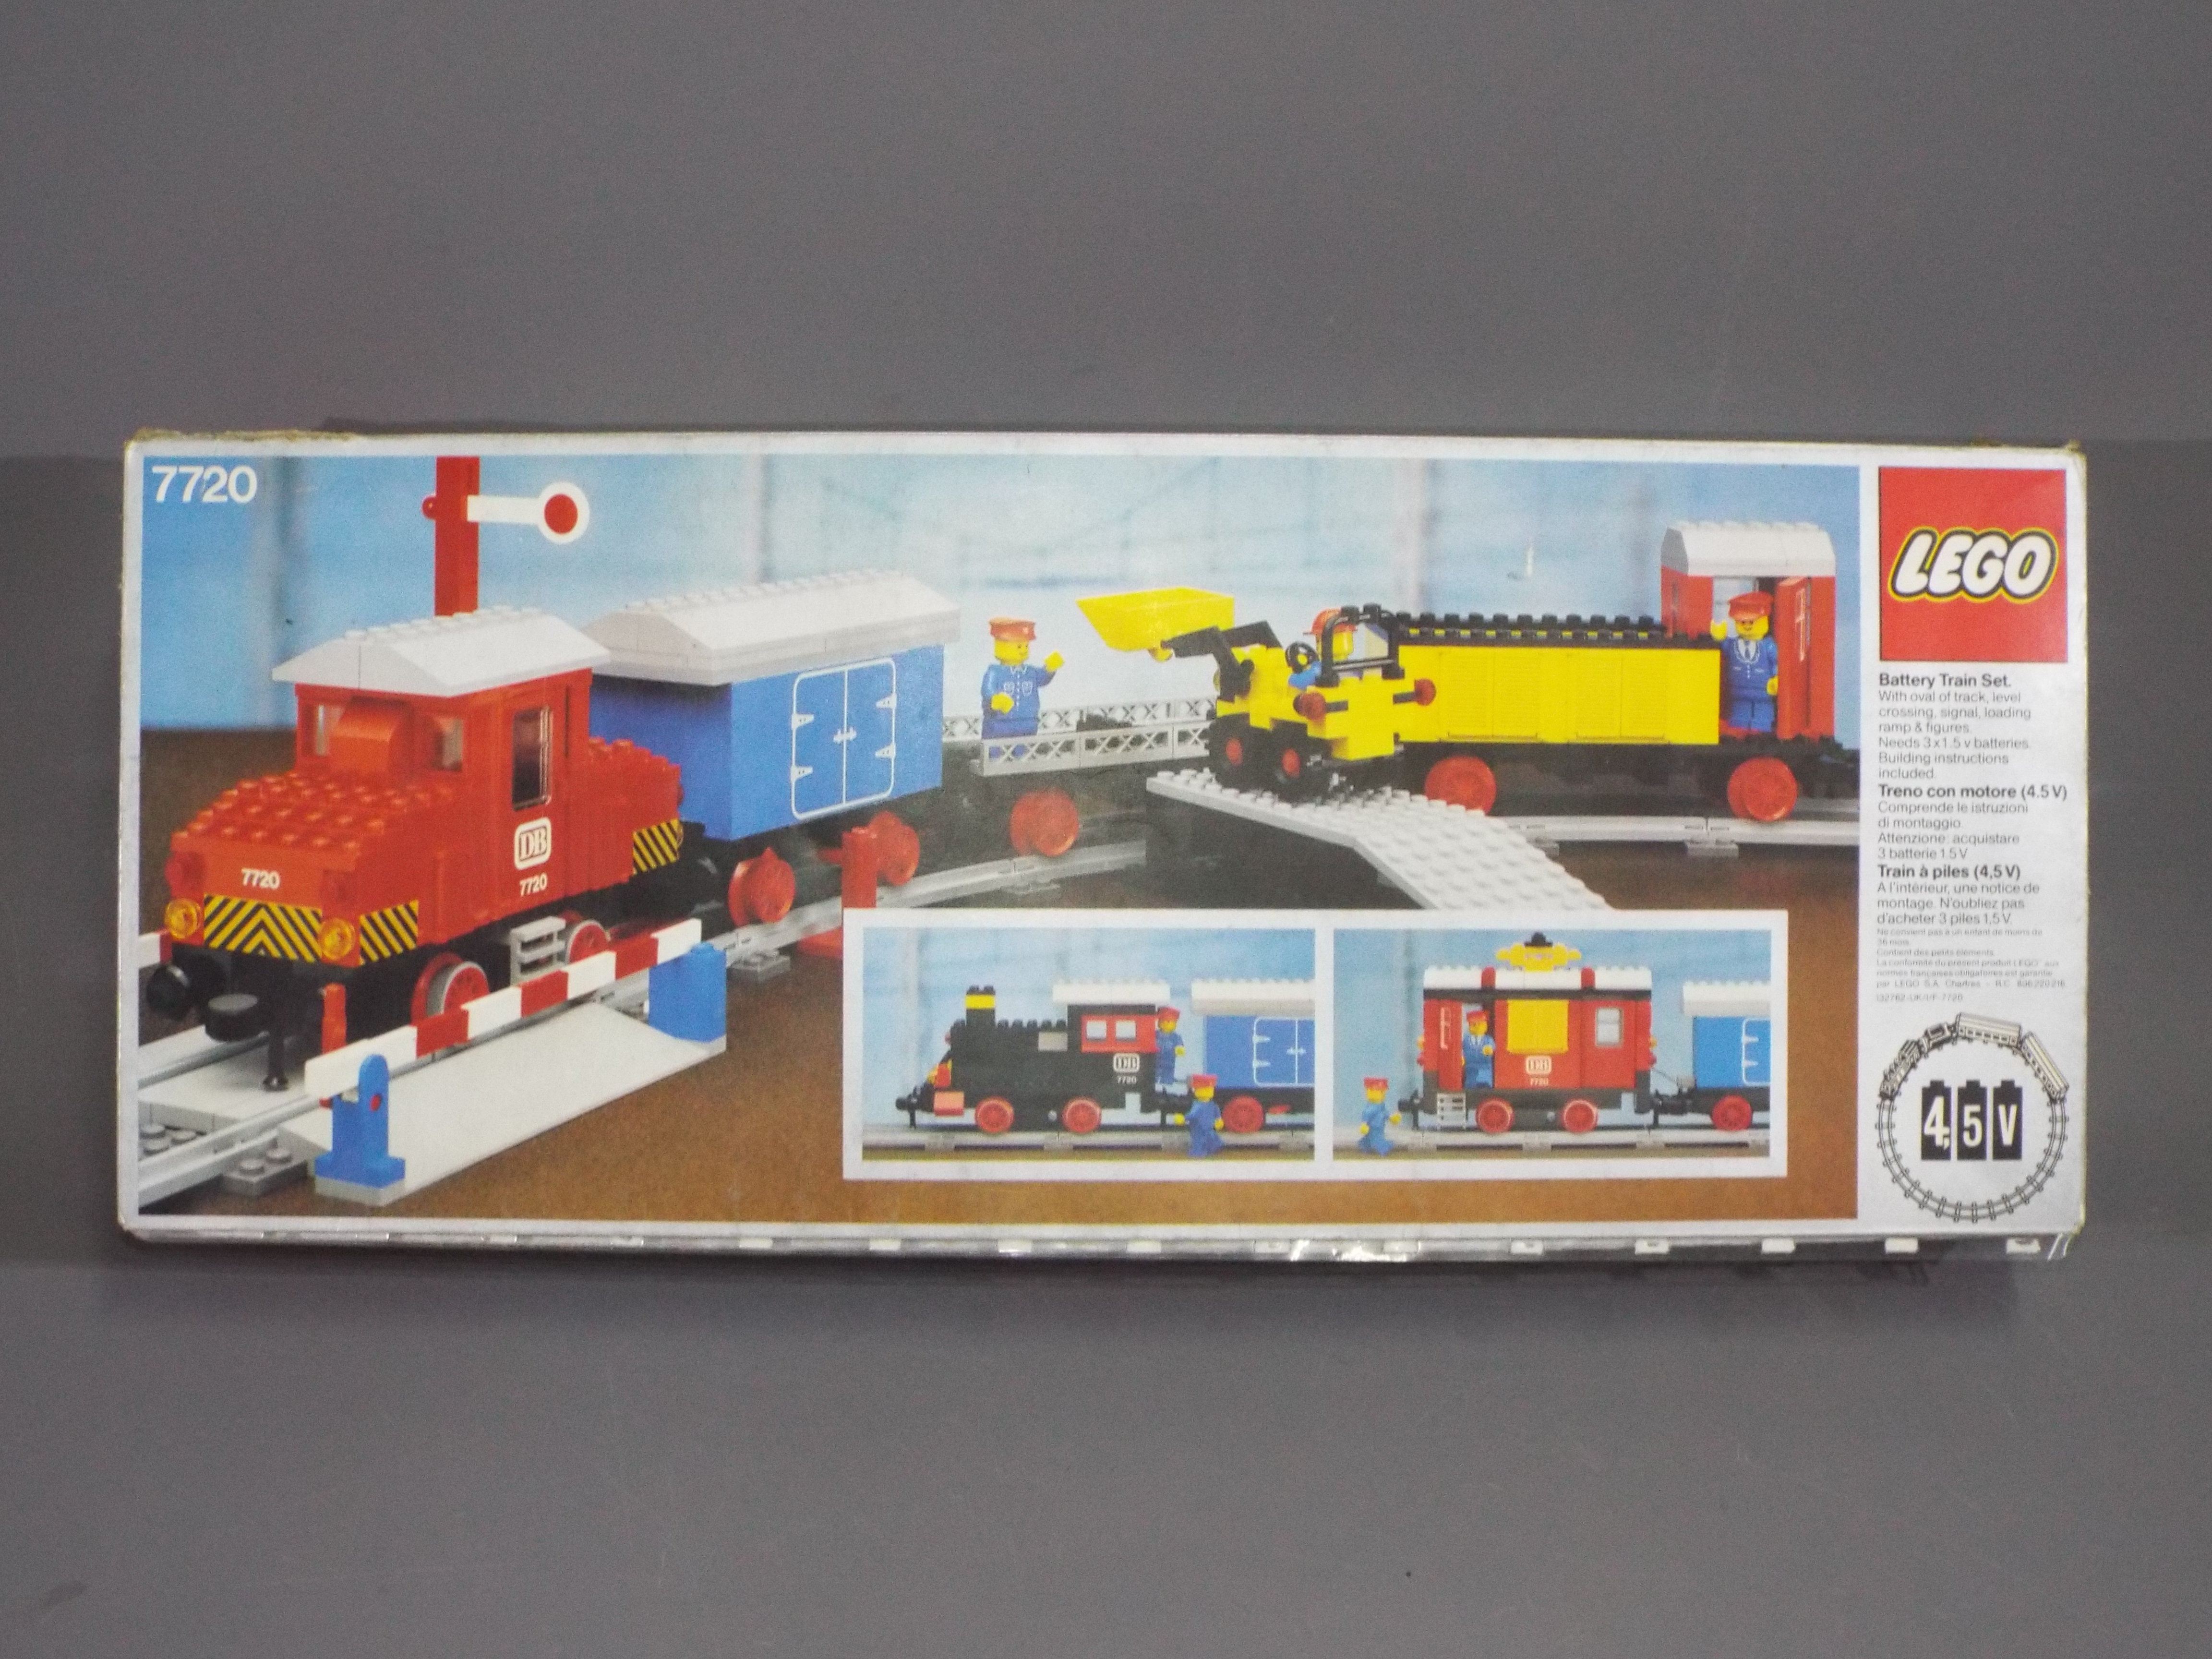 LEGO - A vintage boxed Lego set #7720 Battery Train Set.